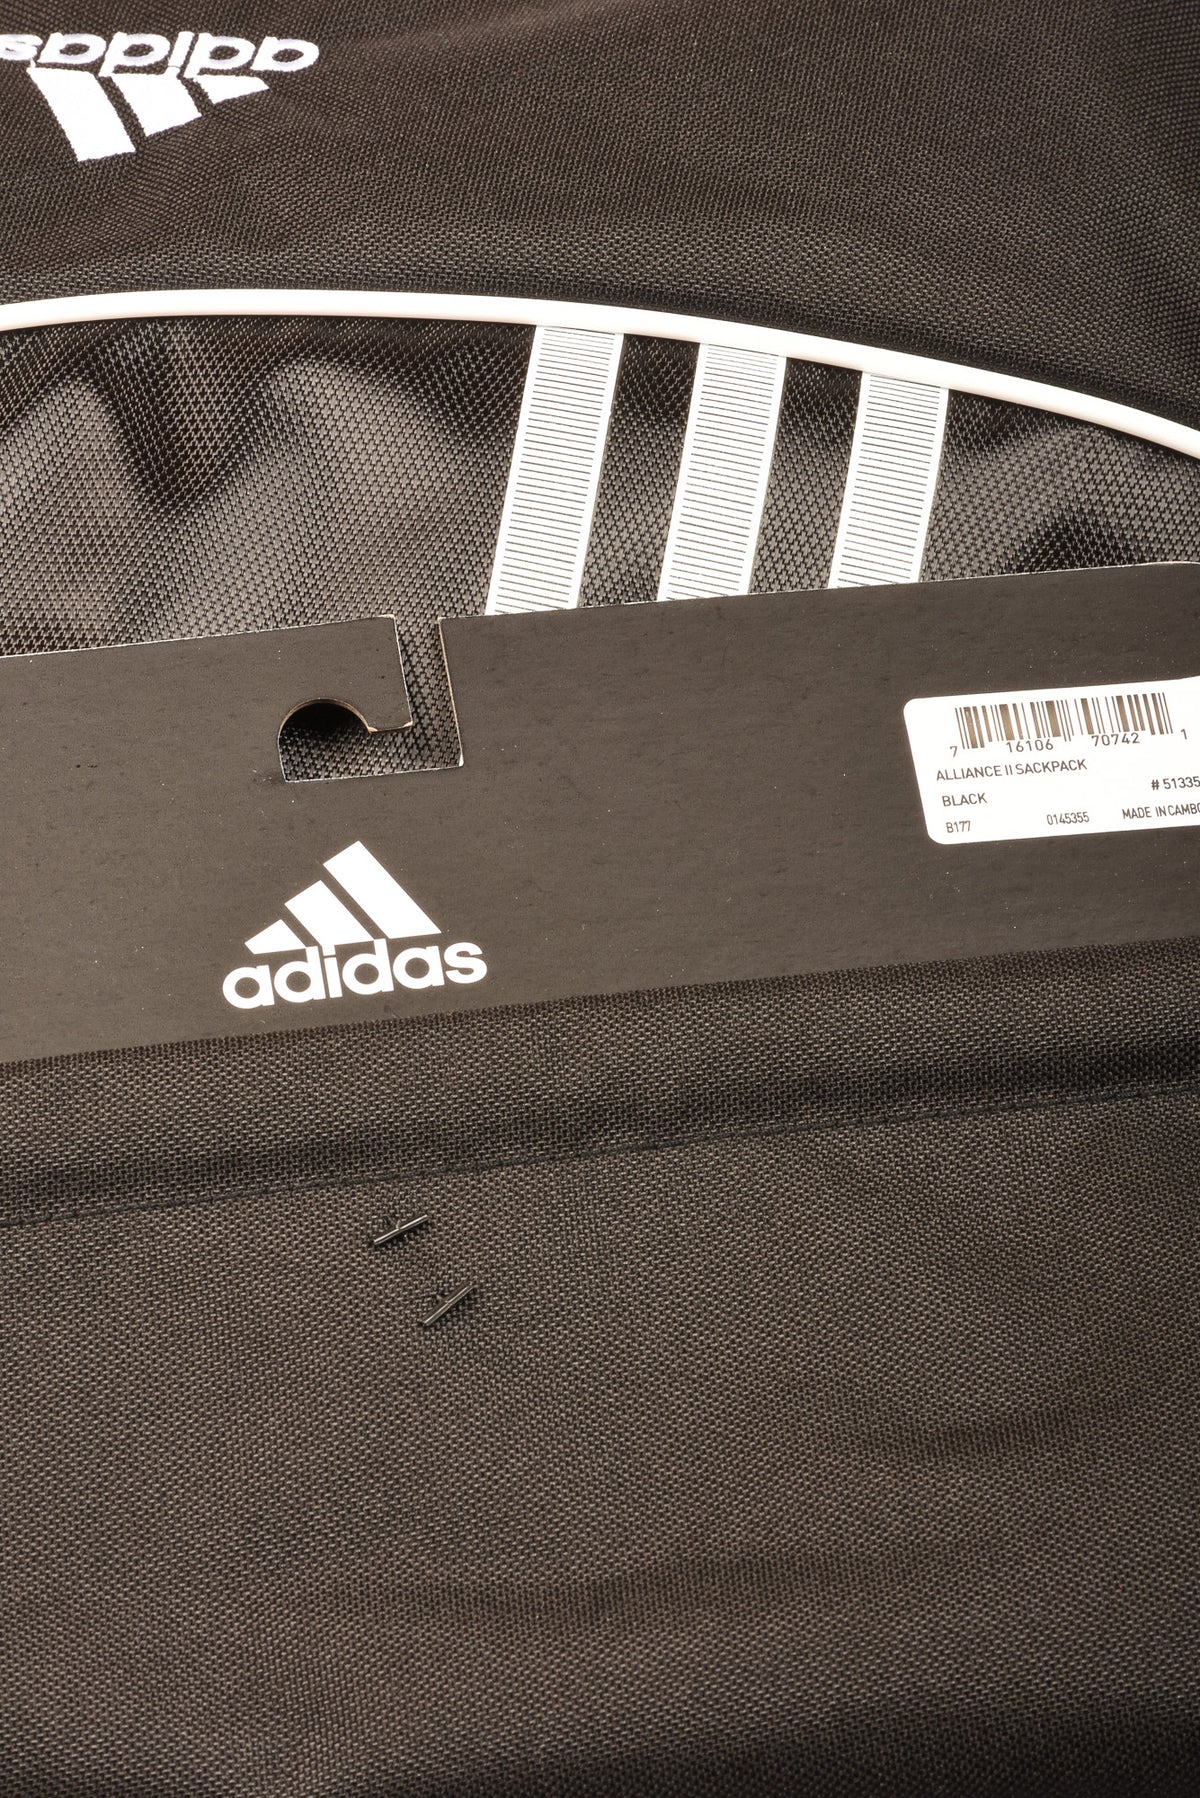 Adidas Activewear Backpack